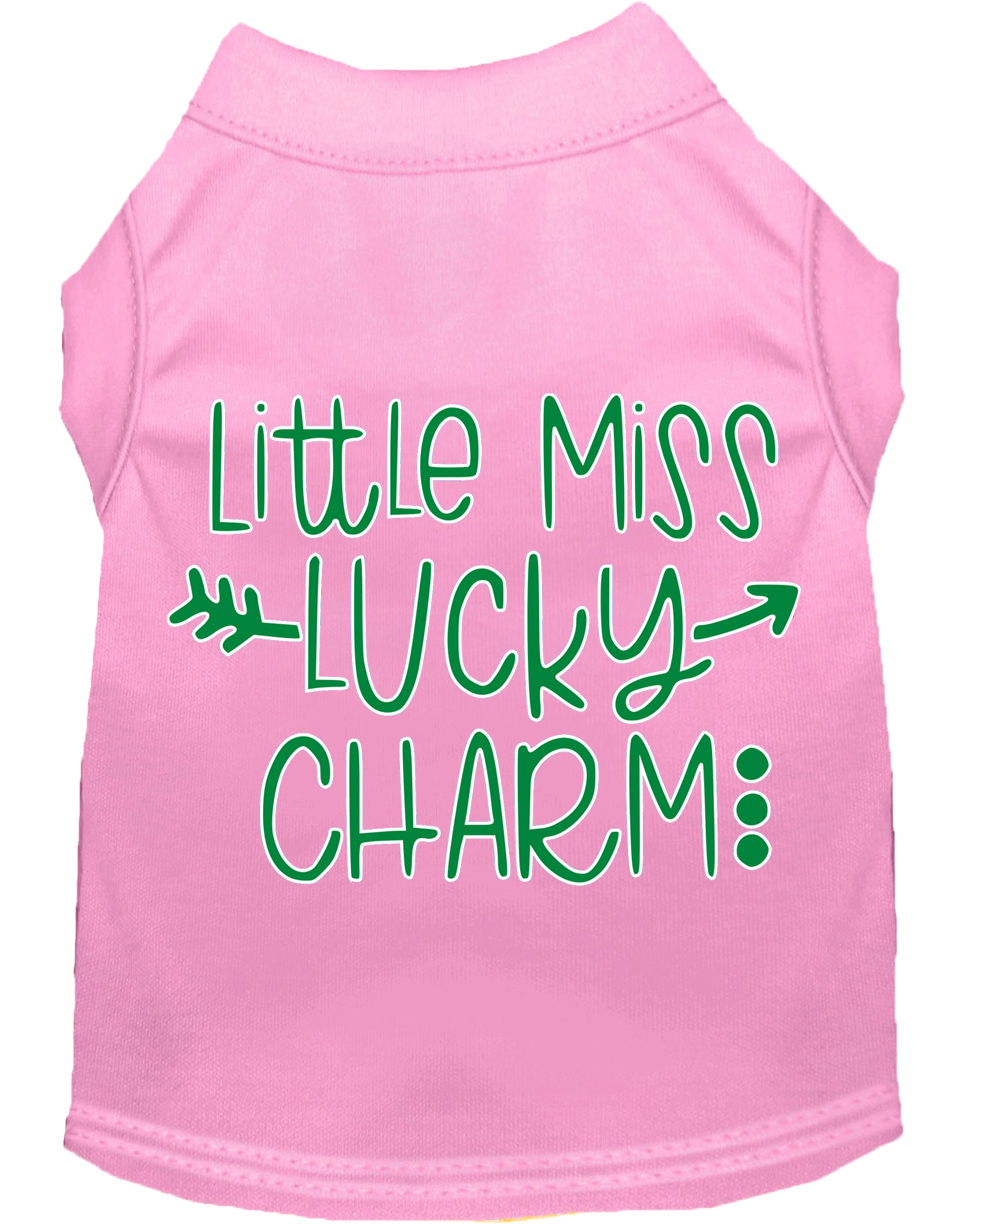 Little Miss Lucky Charm Screen Print Dog Shirt Light Pink Lg